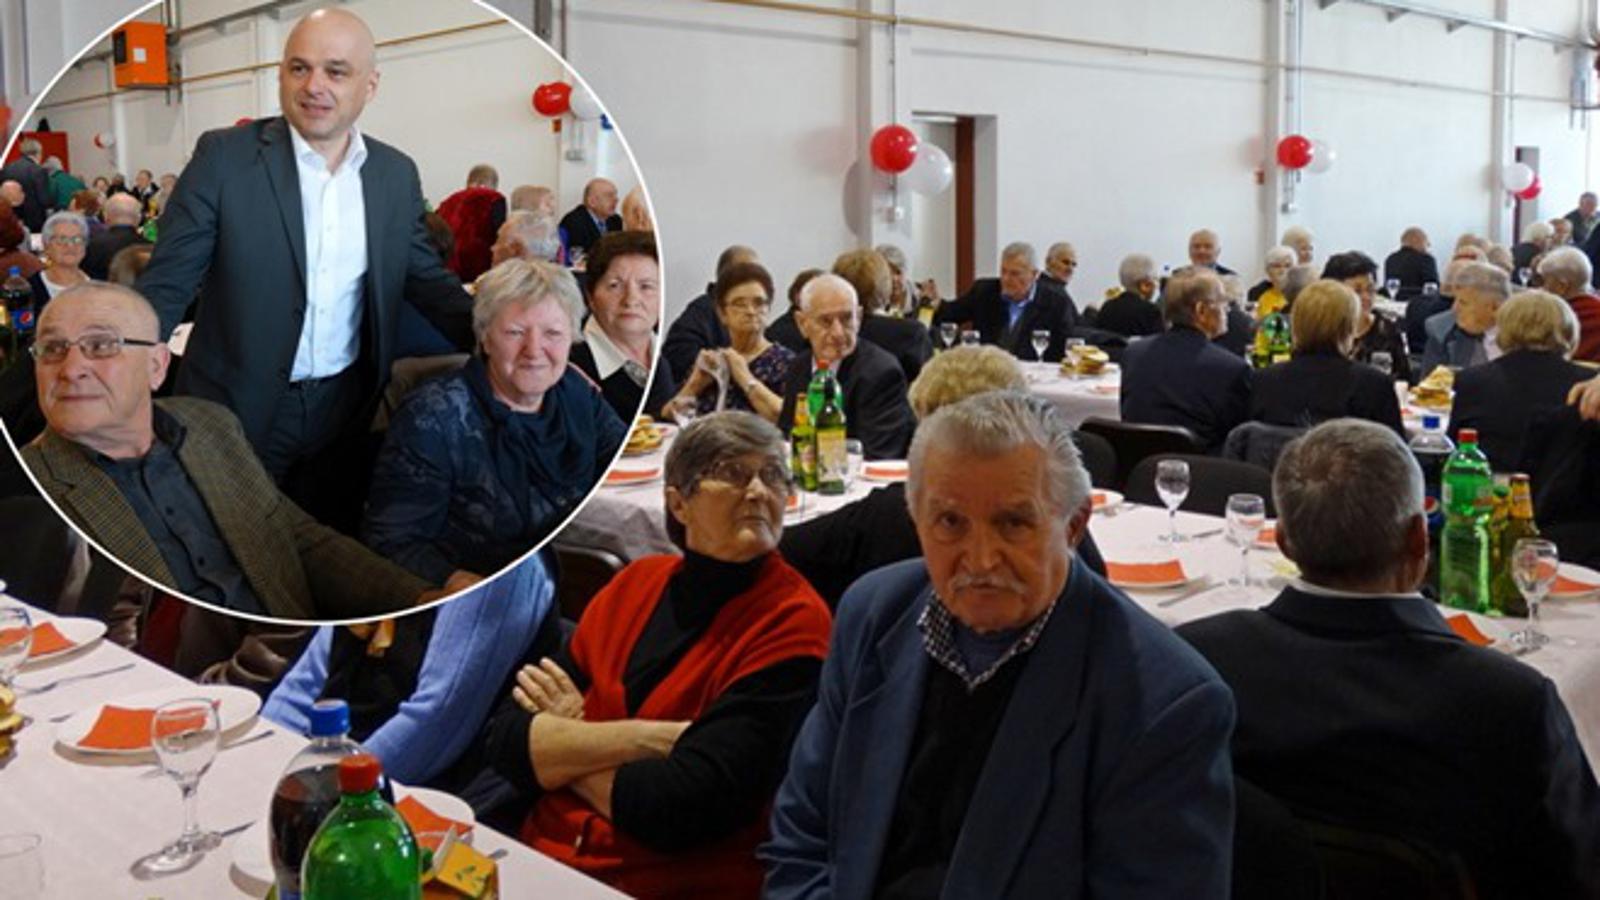 Proslava Valentinova starijih parova s gradonačelnikom Puljašićem